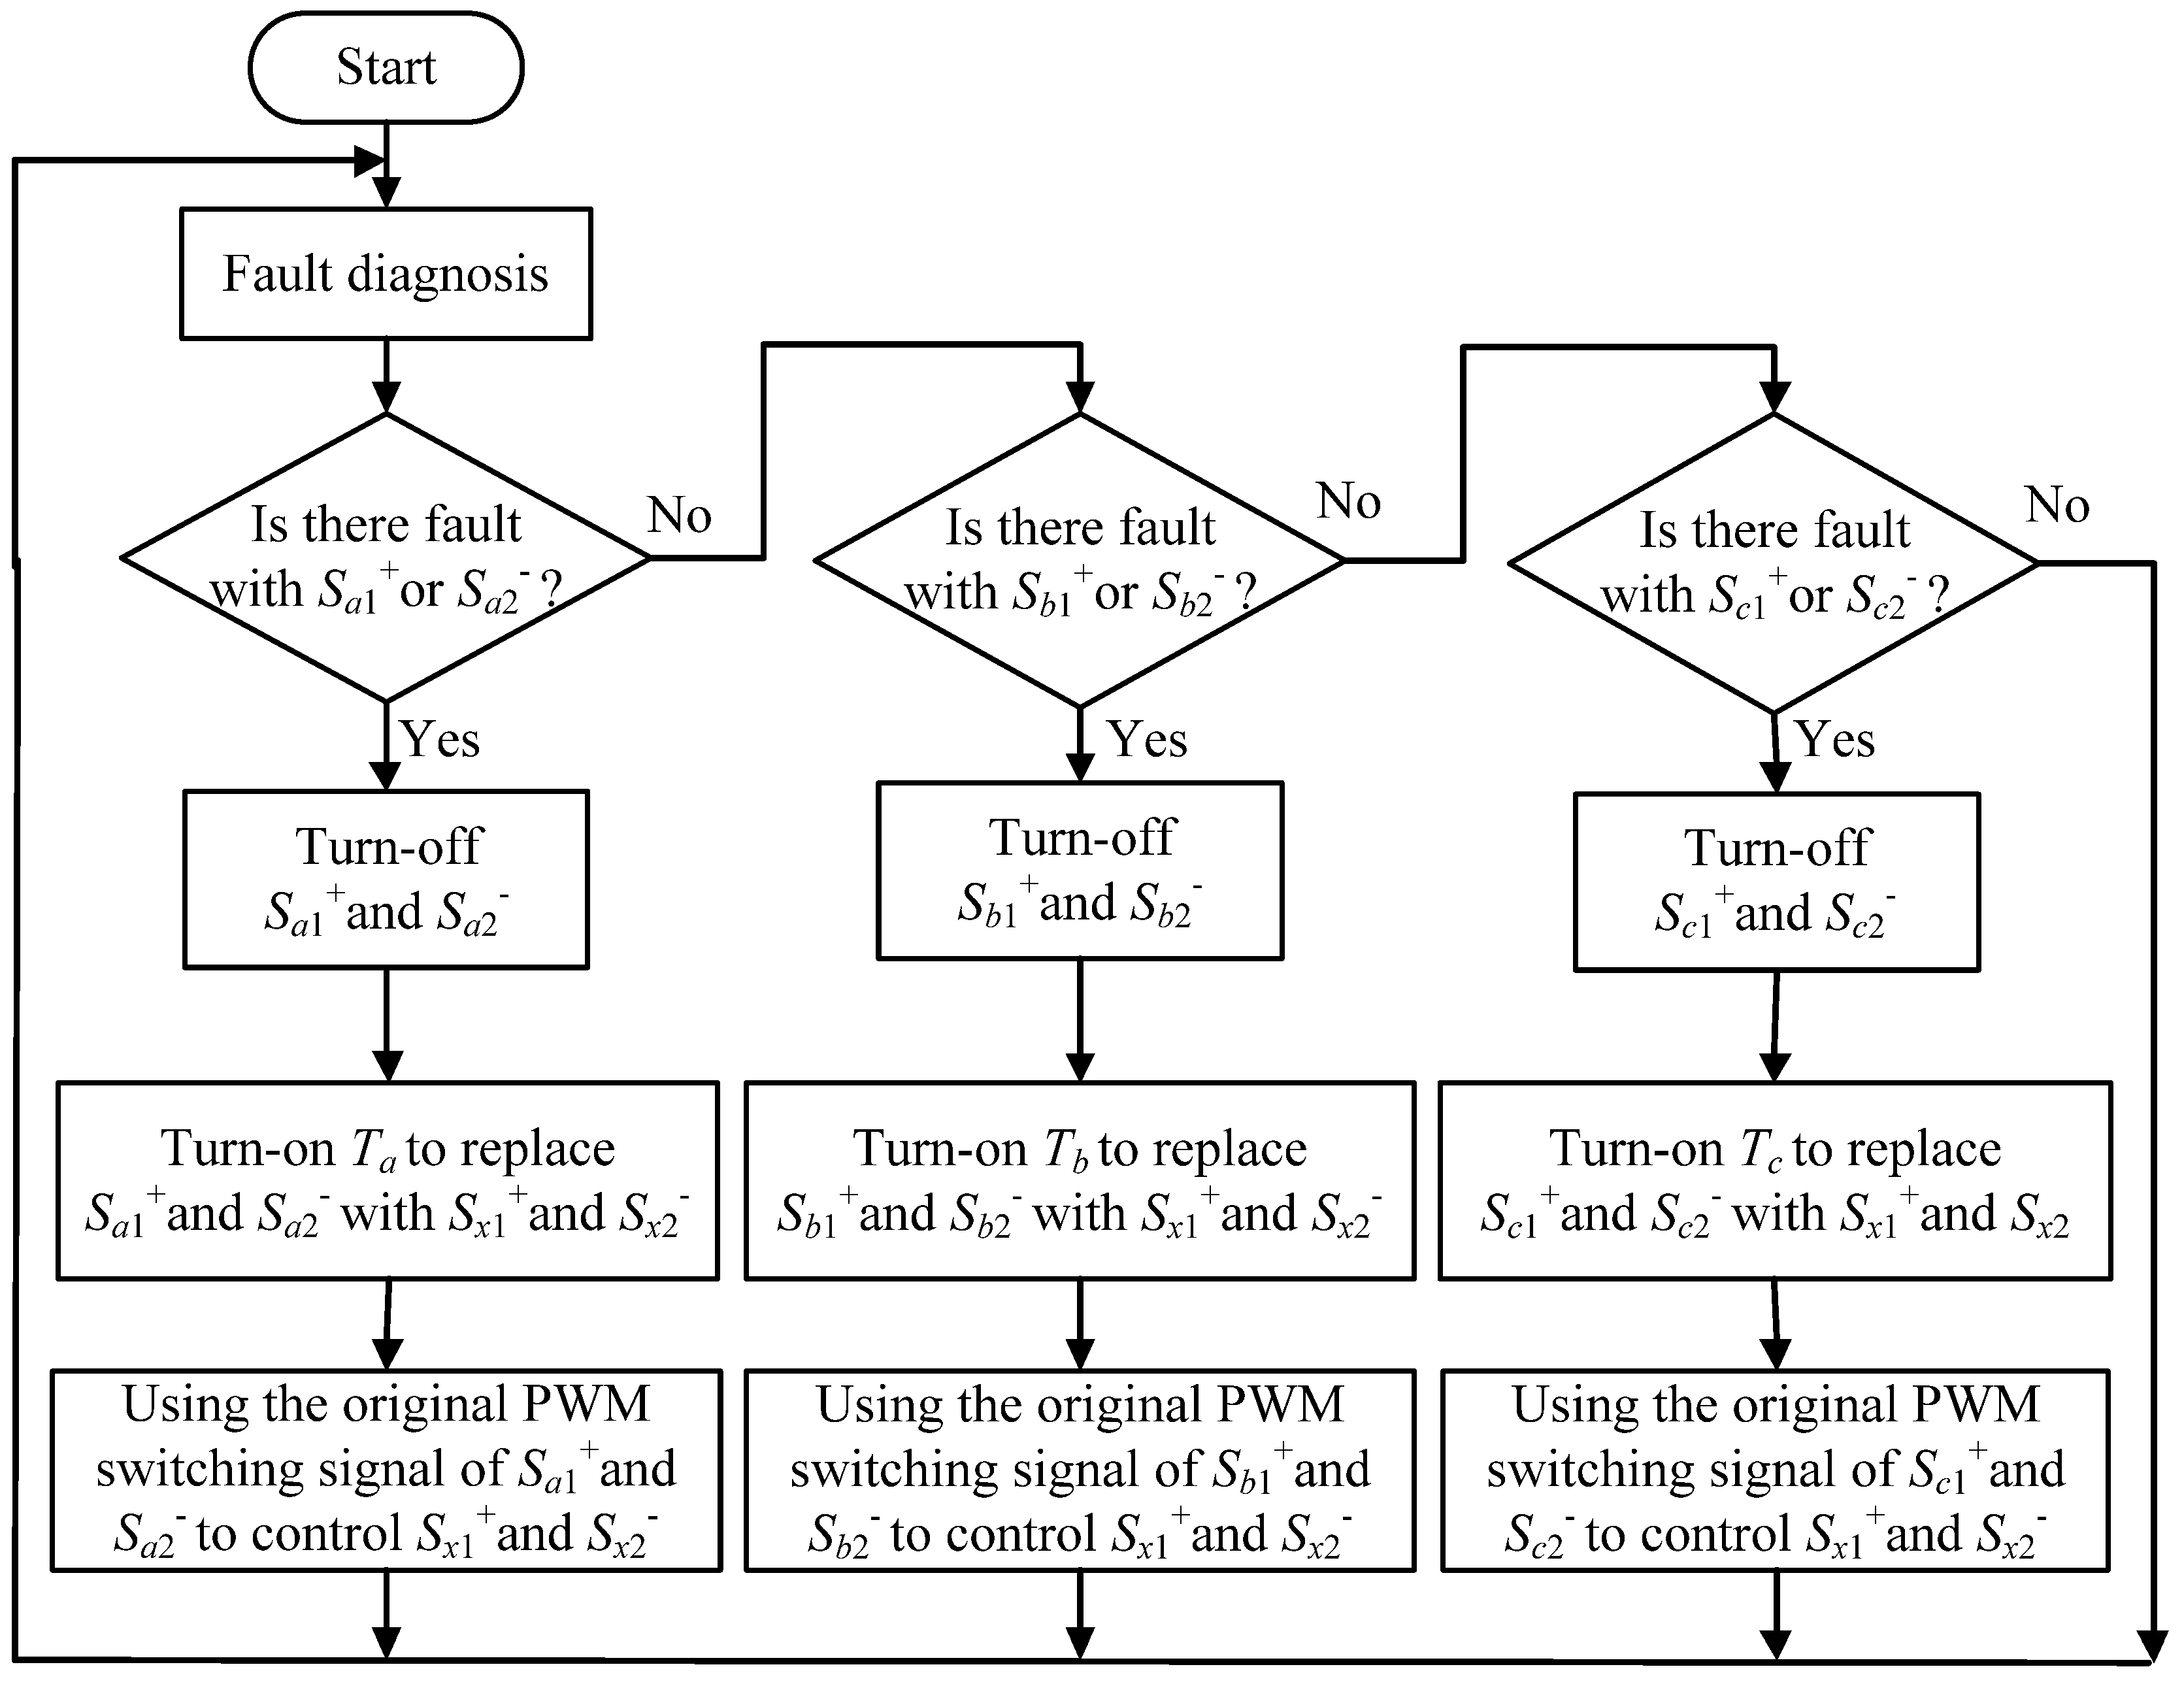 Fault Diagnosis Flow Chart